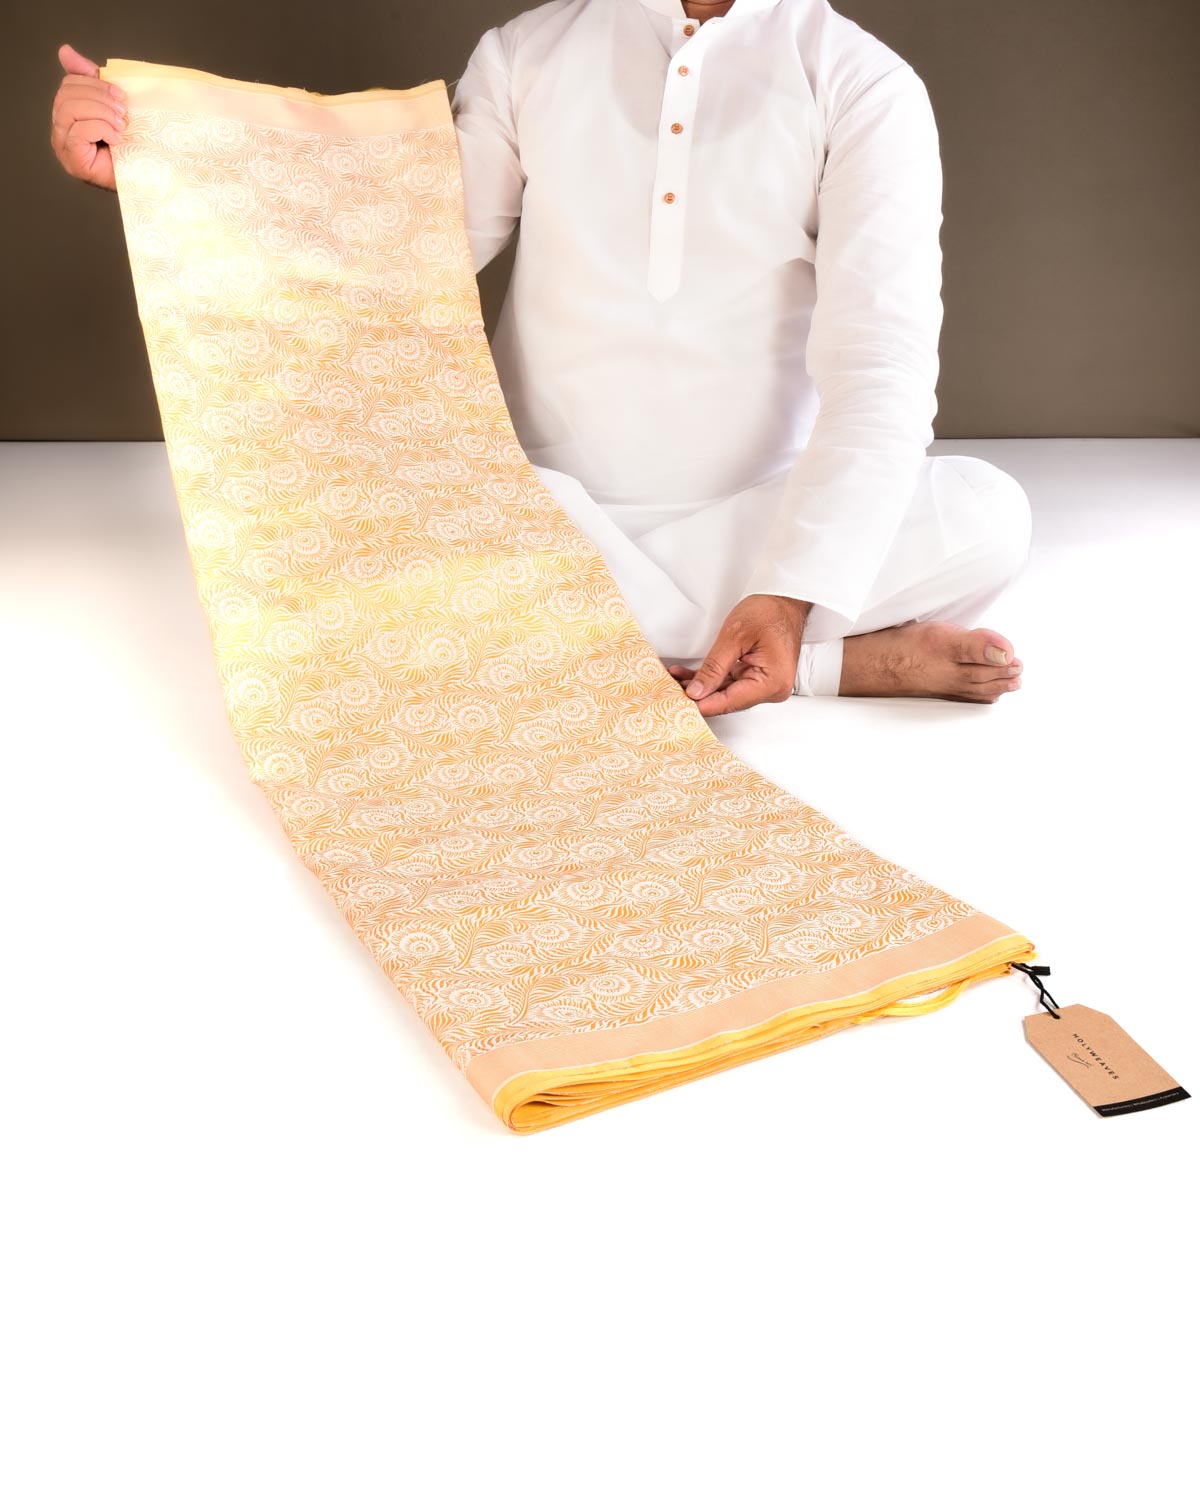 Yellow On White Banarasi Resham Tanchoi Morpankh Brocade Handwoven Katan Silk Saree - By HolyWeaves, Benares